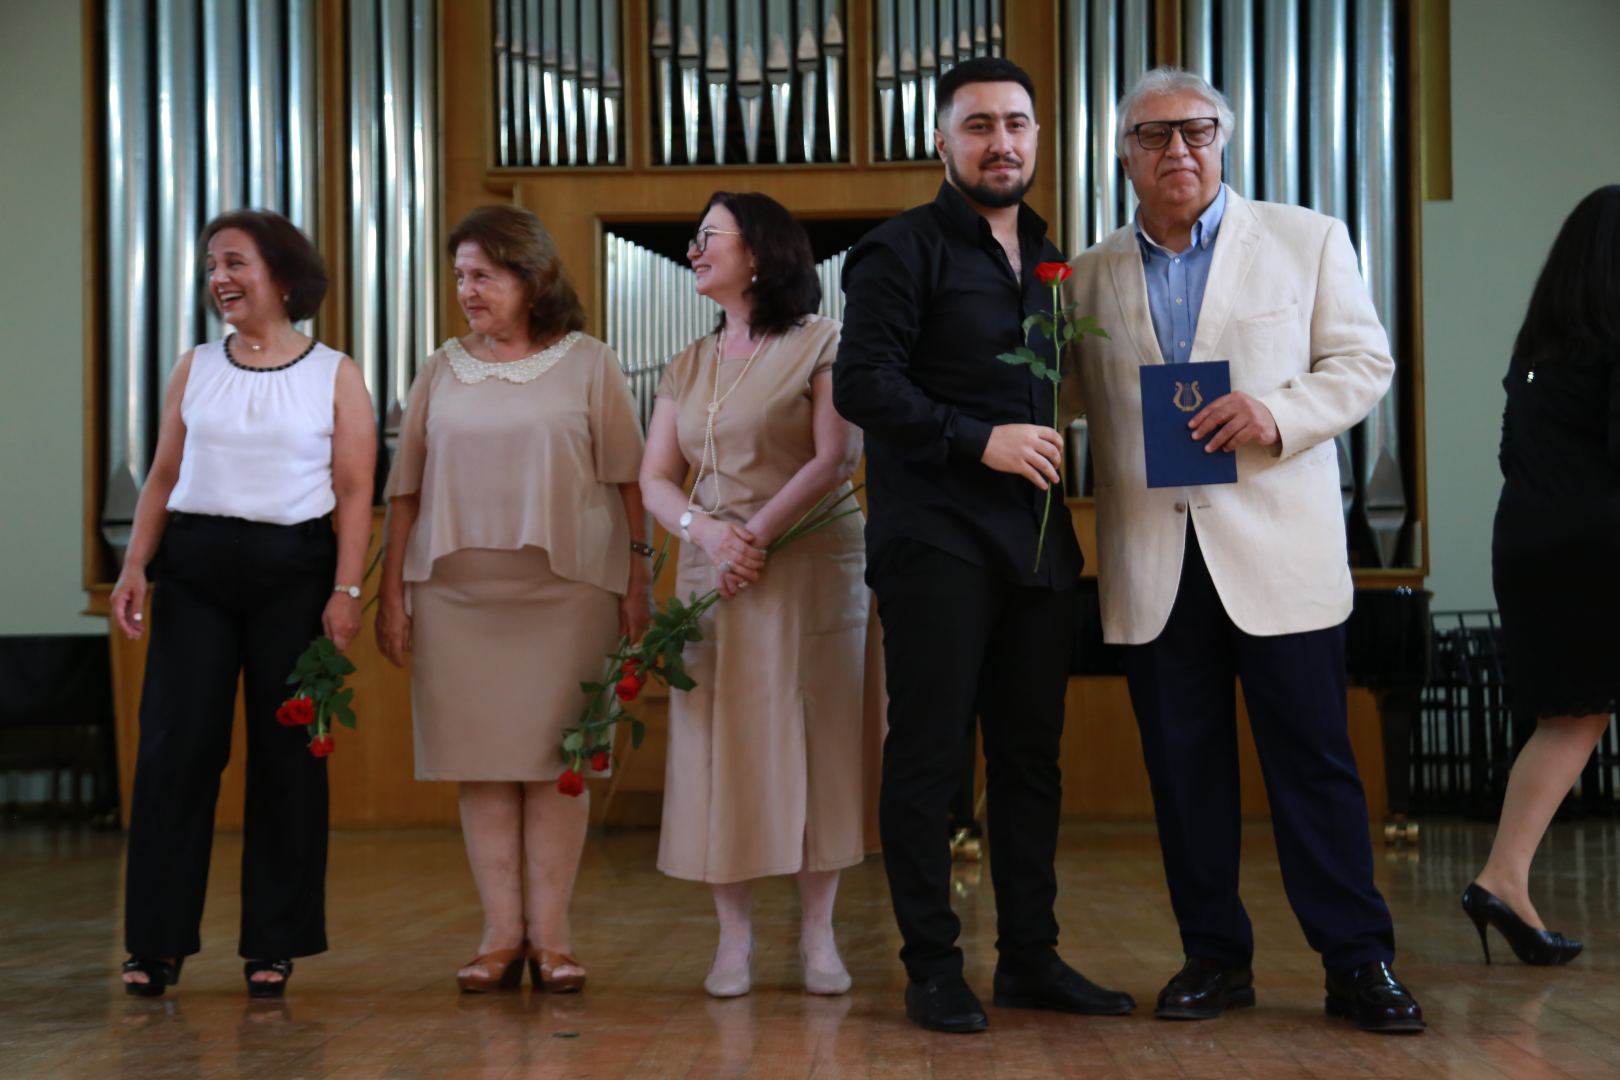 В Бакинской музыкальной академии прошел праздничный вечер выпускников (ФОТО)